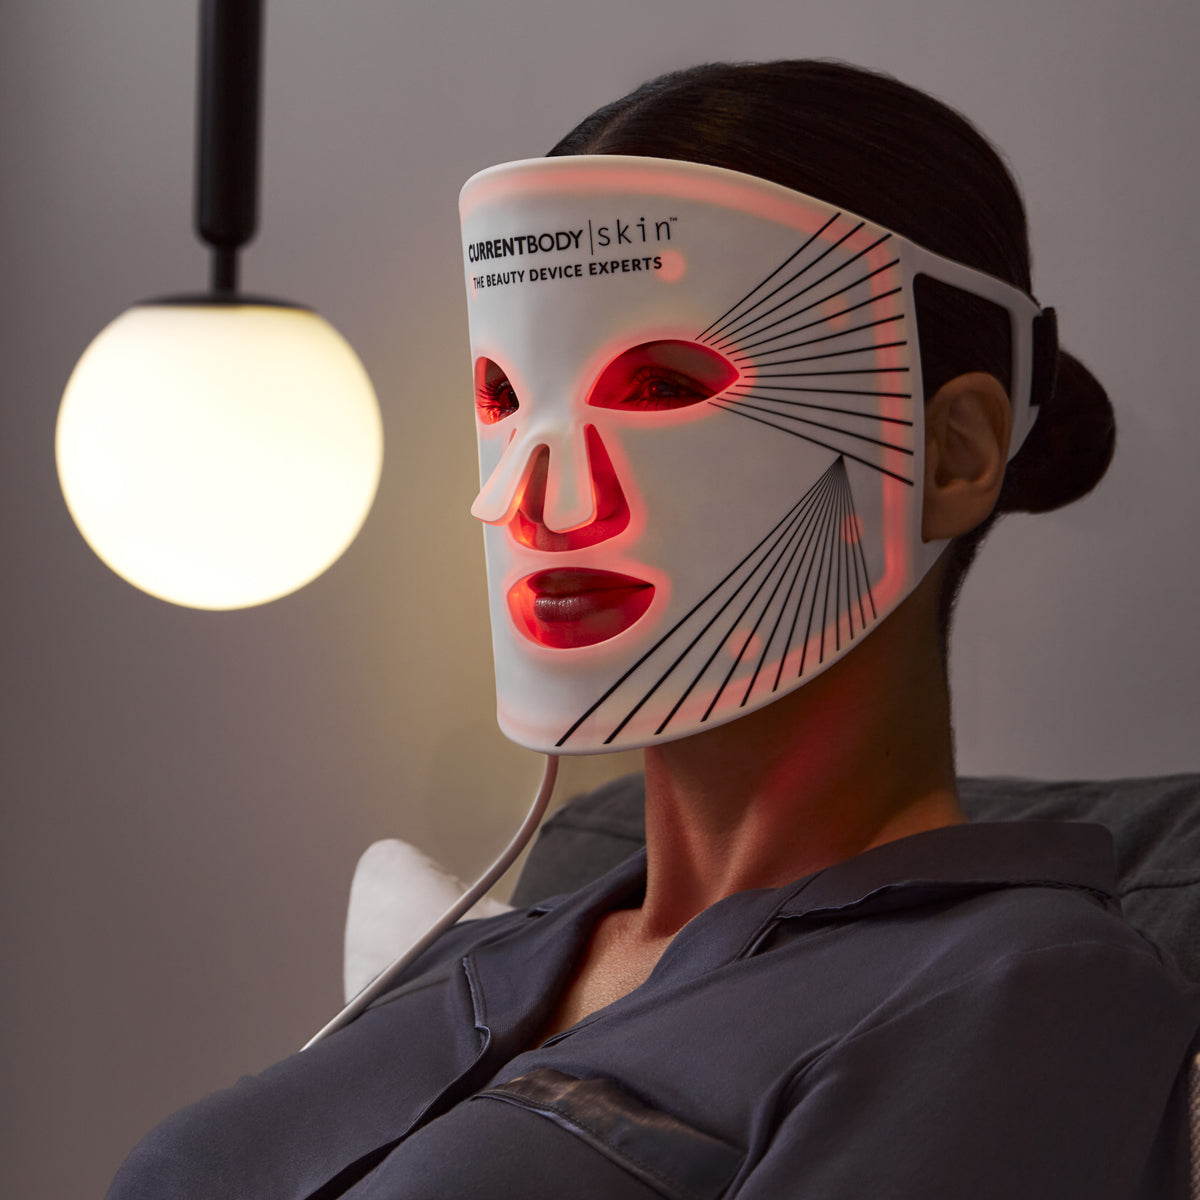 CurrentBody skin LEDライトセラピーマスクご購入をお願い致します